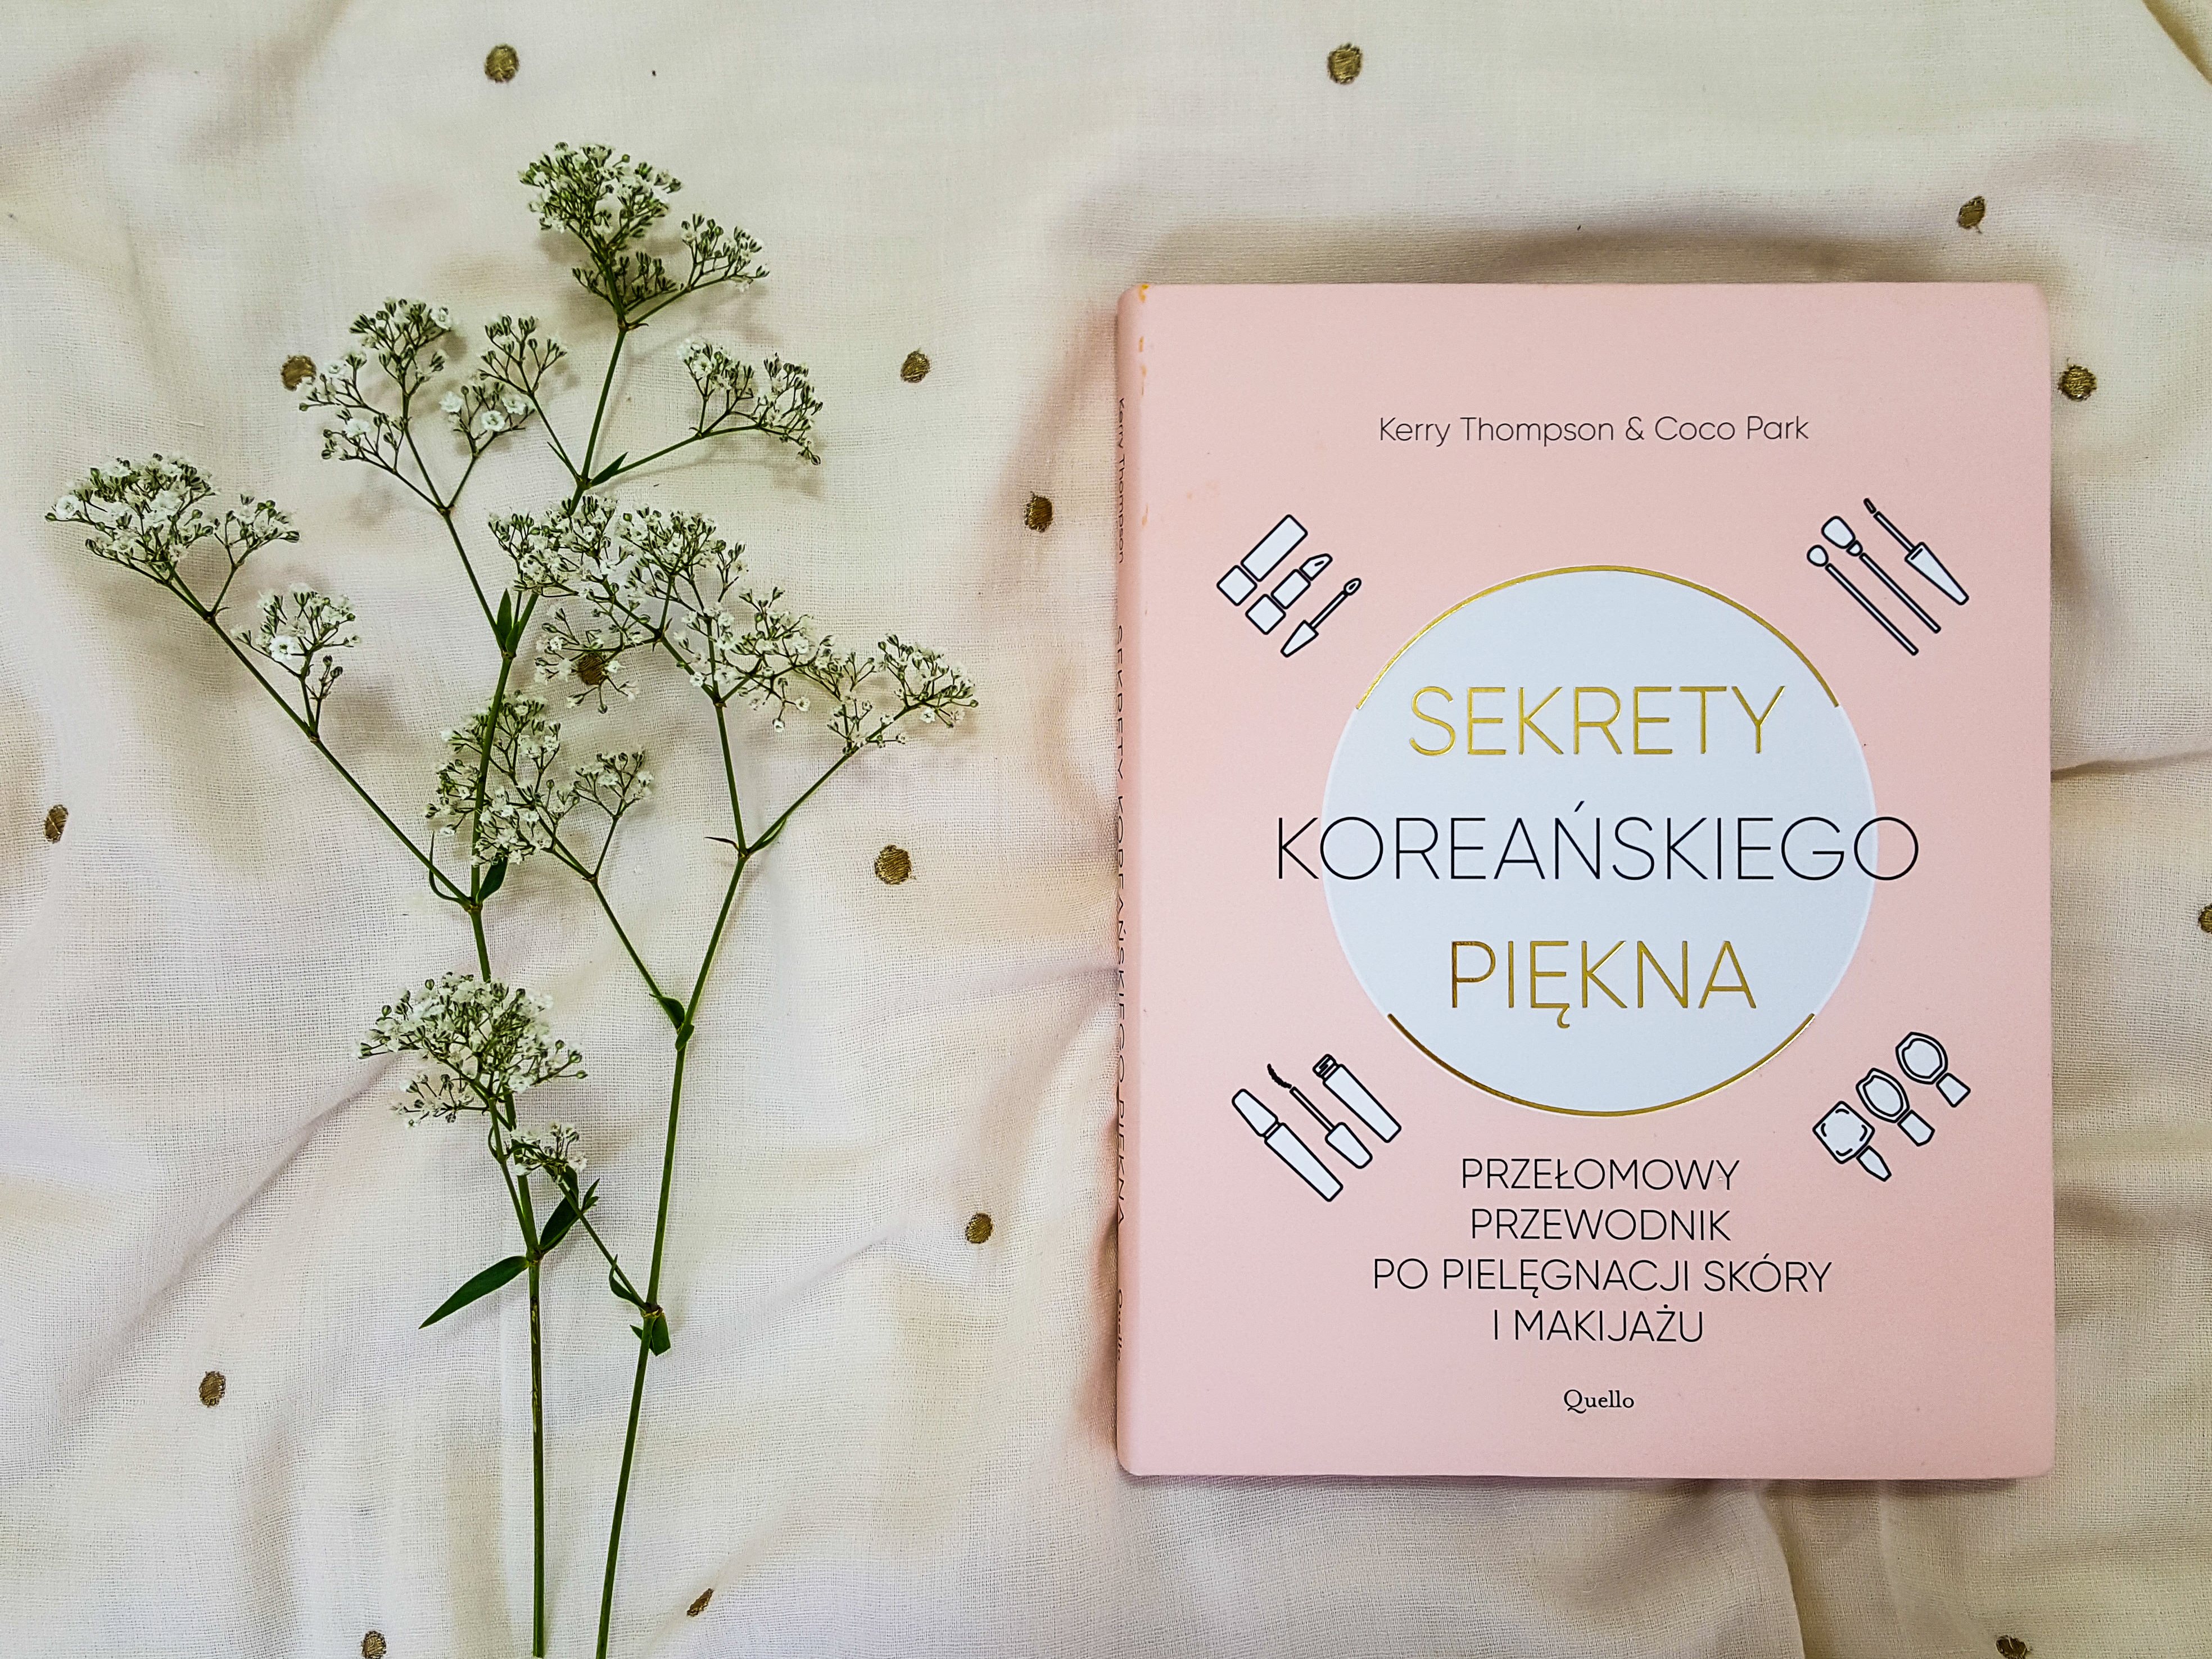 Sekrety koreańskiego piękna